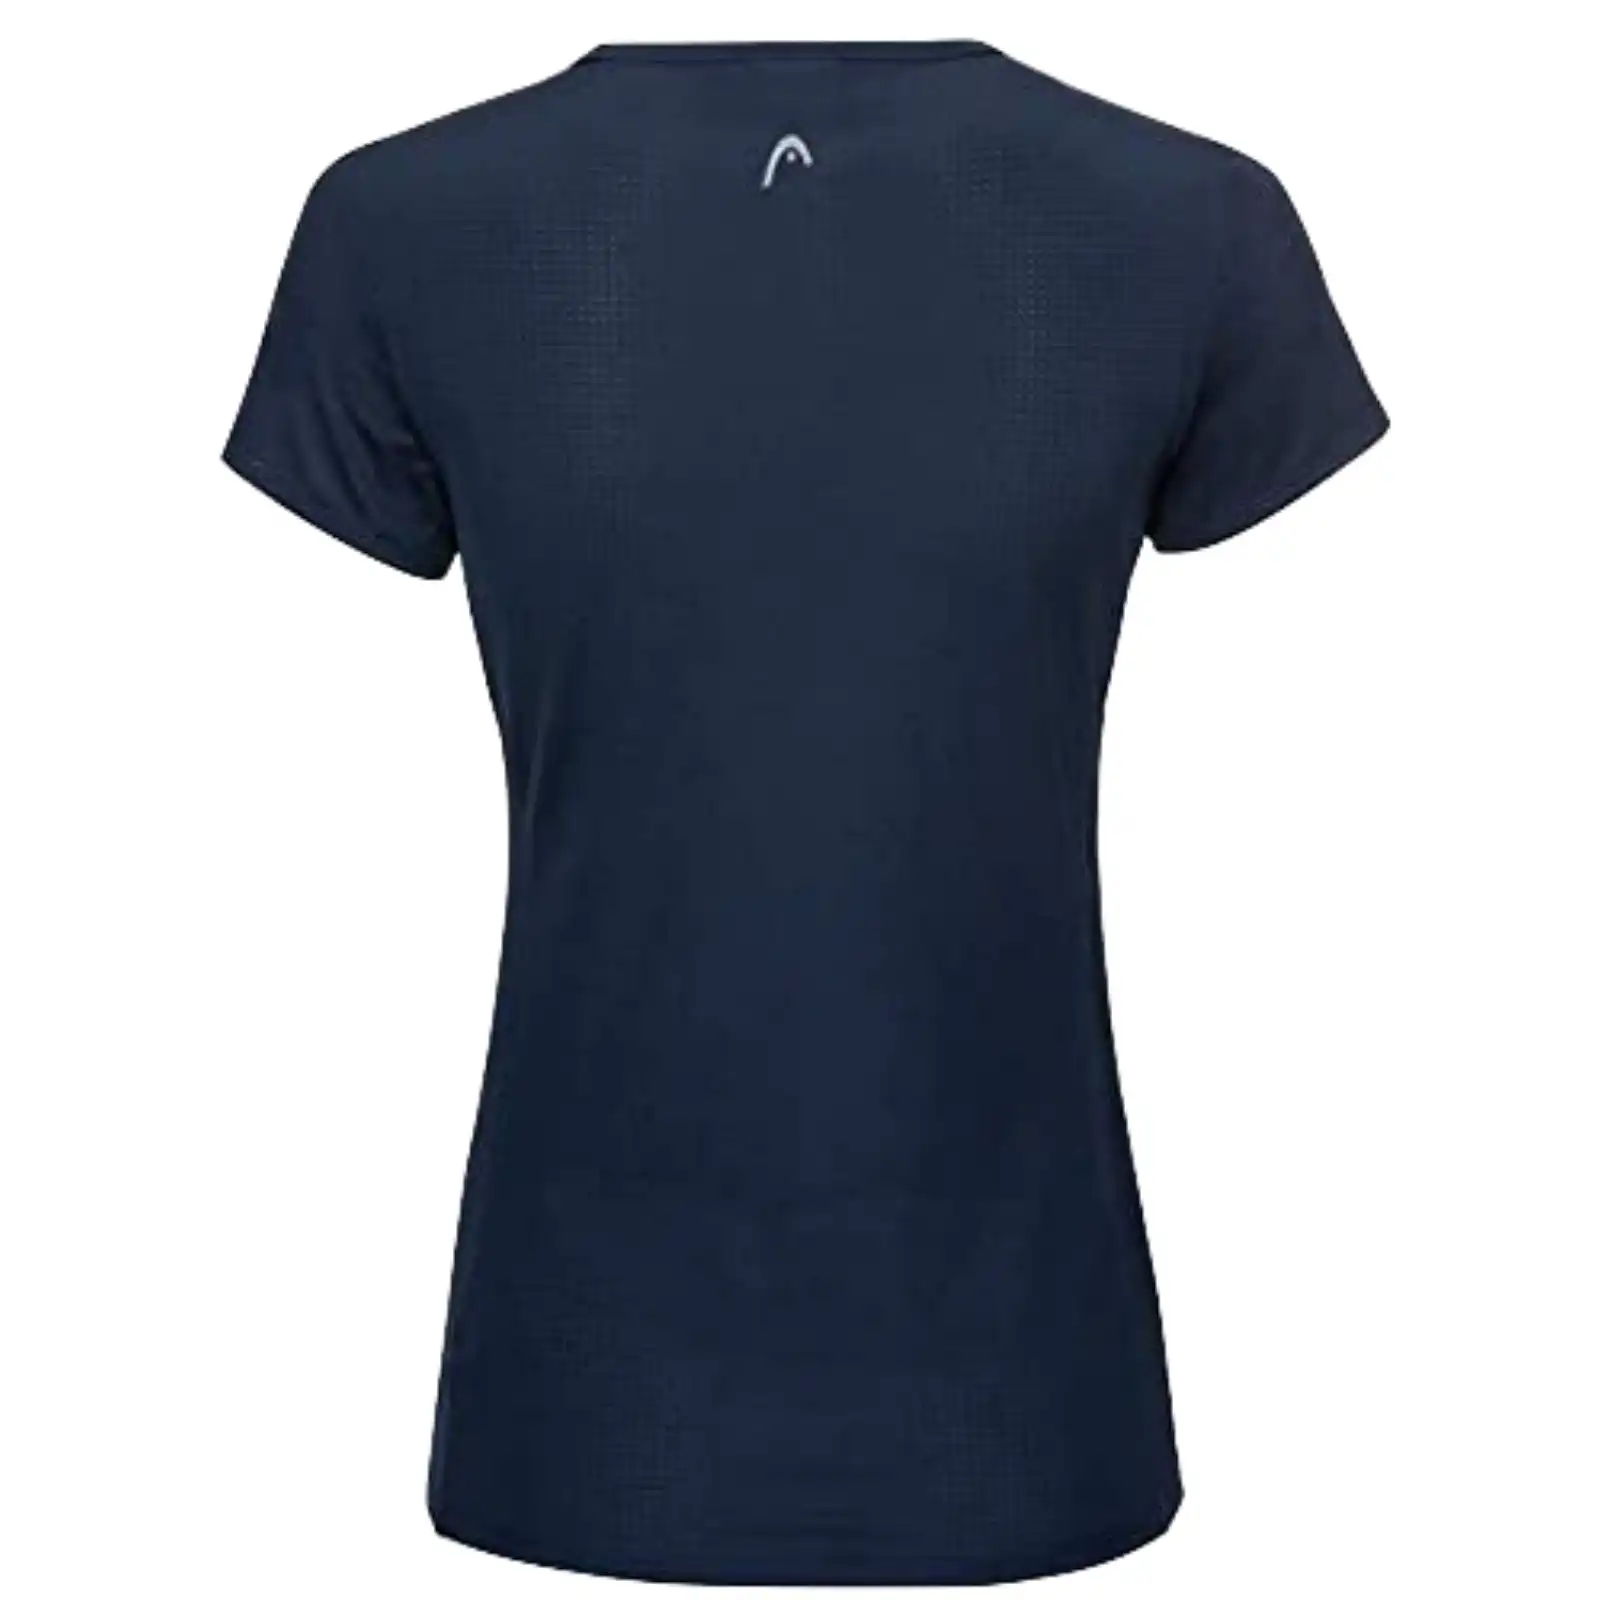 Head Women's Mia T-Shirt Tennis Sports Gym Workout - Magenta/Dark Blue